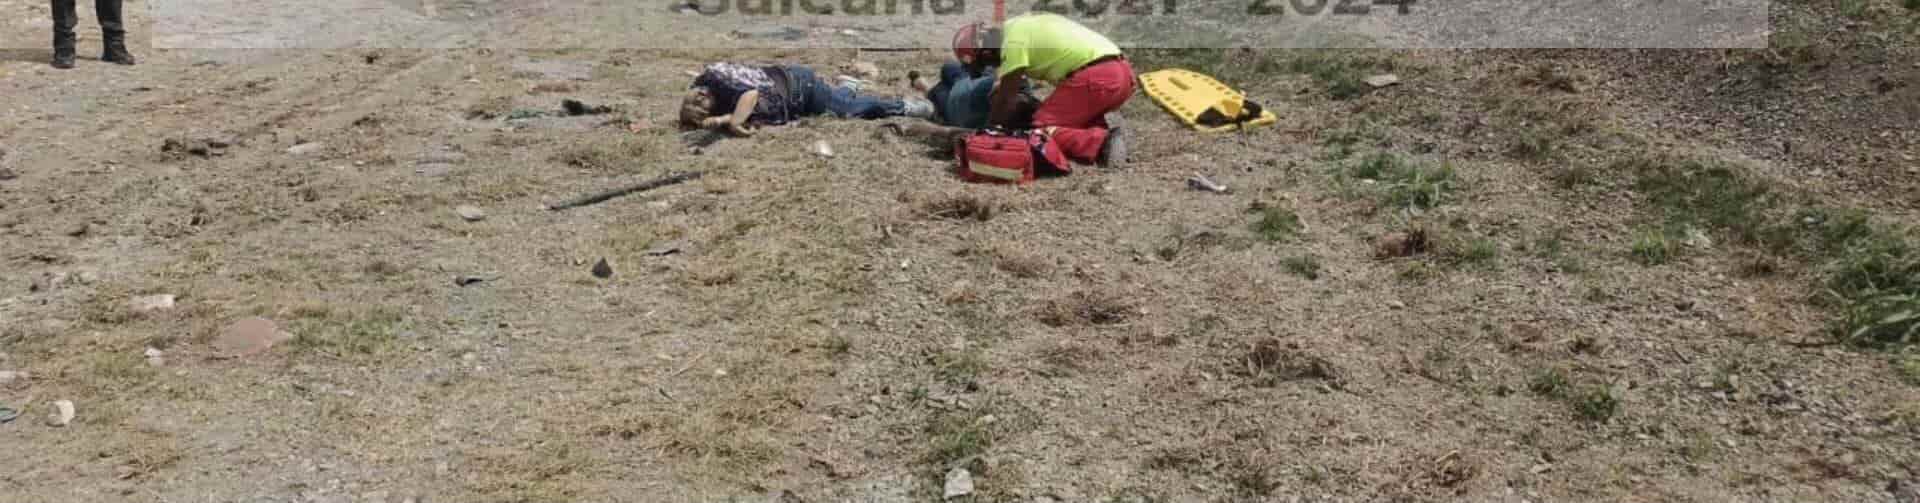 Tres personas sin vida y ocho lesionados, fue el saldo de la volcadura de un camioneta tipo van, que se volcó en un tramo carretero del municipio de Galeana, Nuevo León